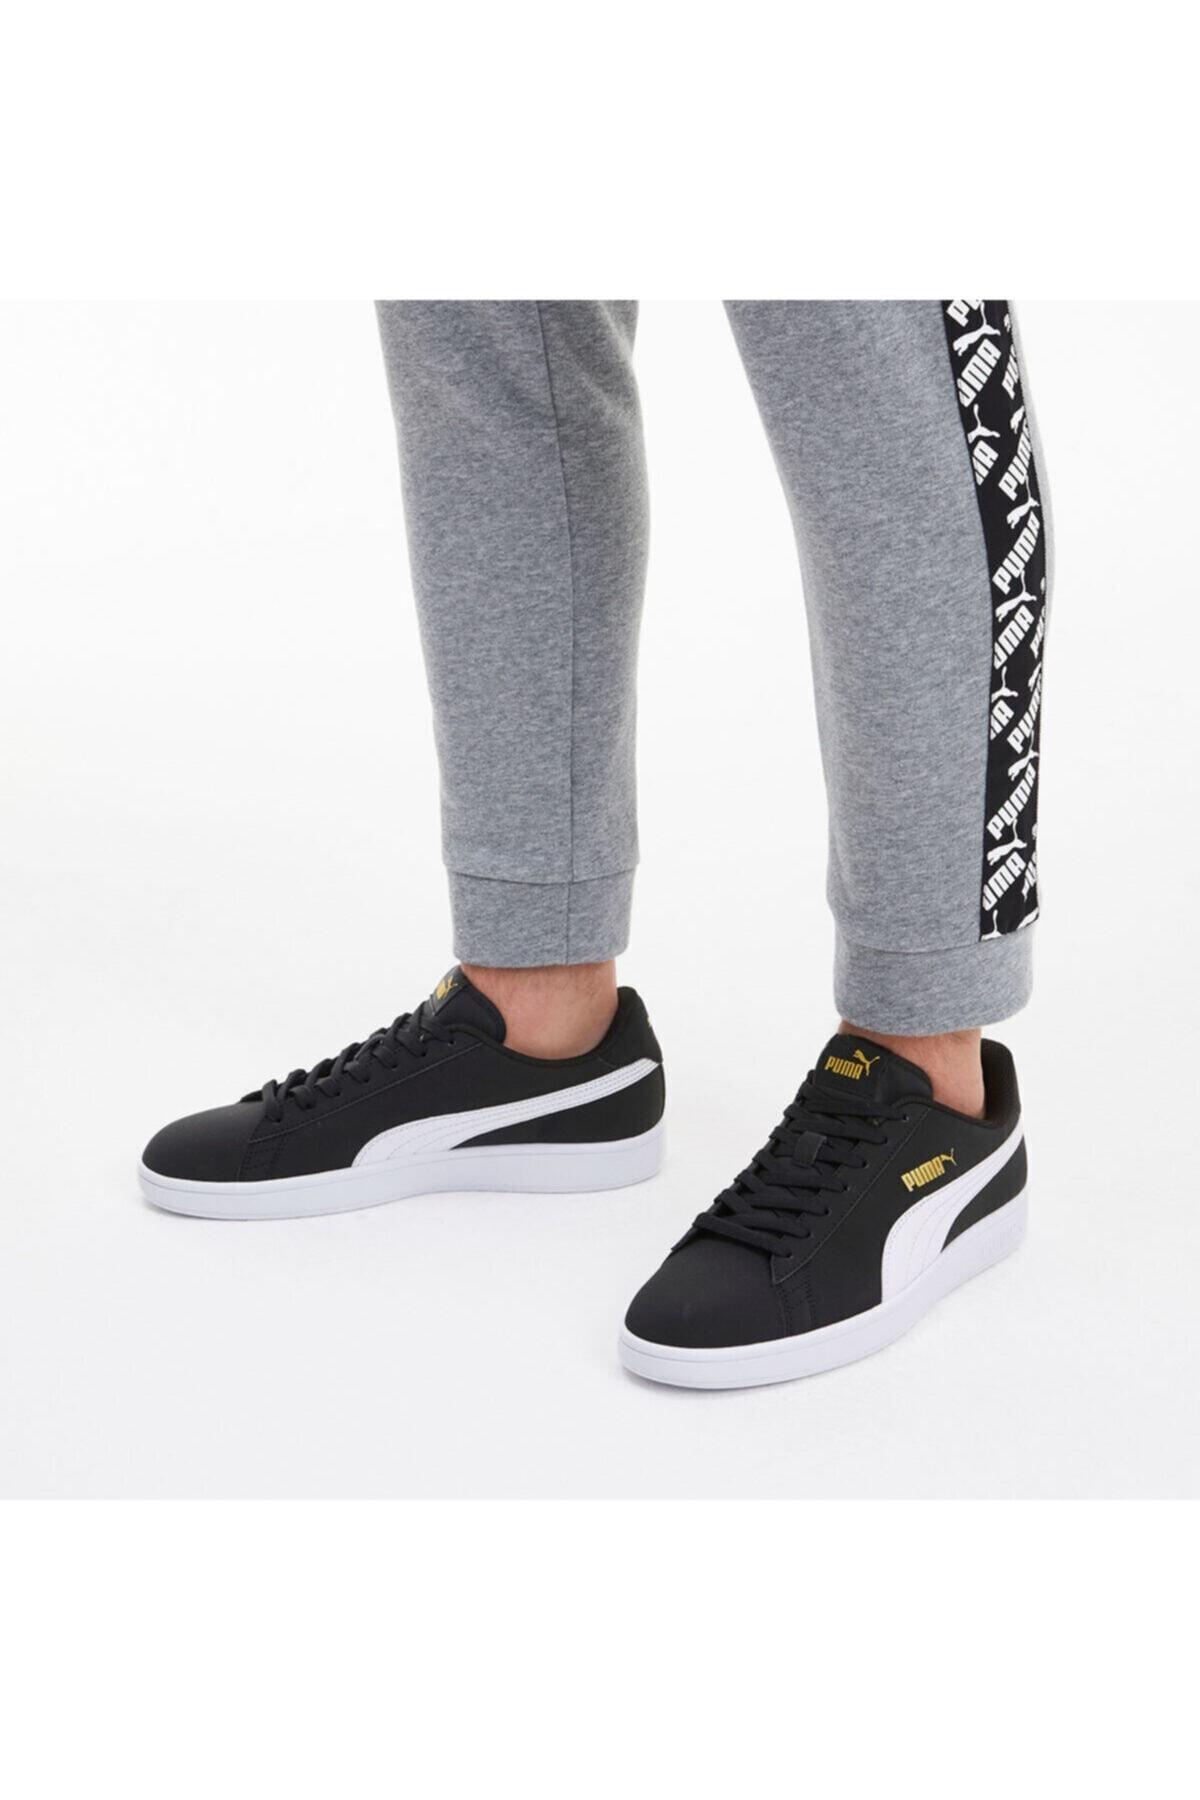 Smash Buck - Unisex Siyah Sneaker Spor Ayakkabı